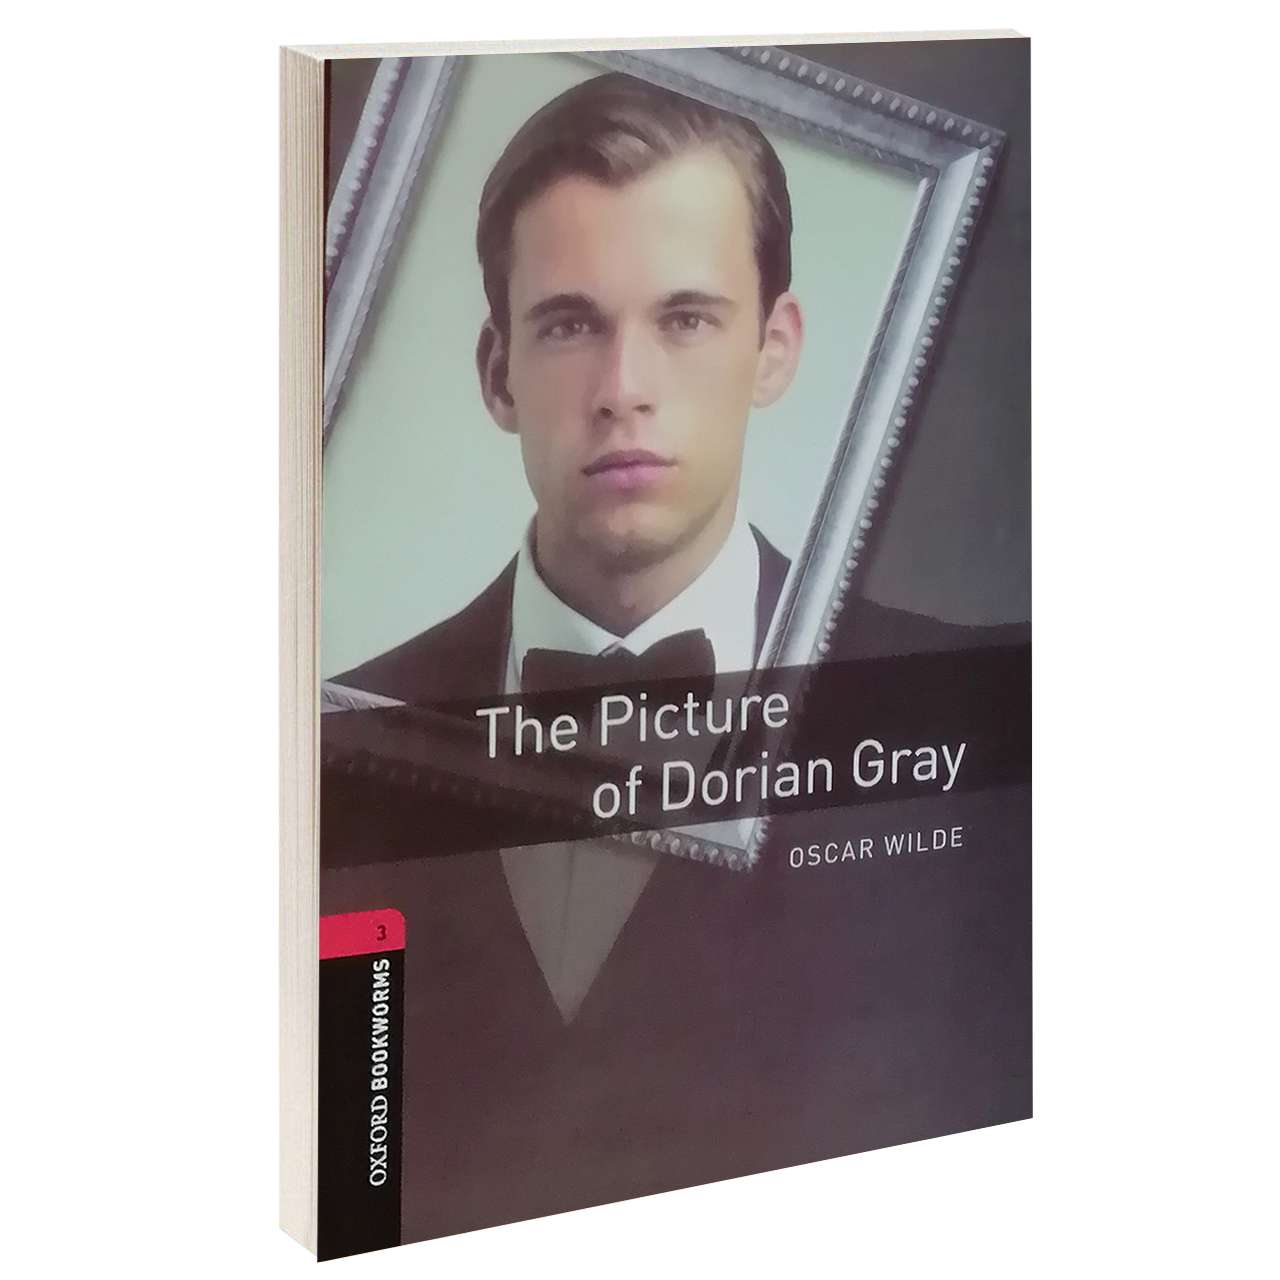 آنباکس کتاب The Picture of Dorian Gray اثر OSCAR WILD انتشارات OXFORD در تاریخ ۰۲ تیر ۱۳۹۹